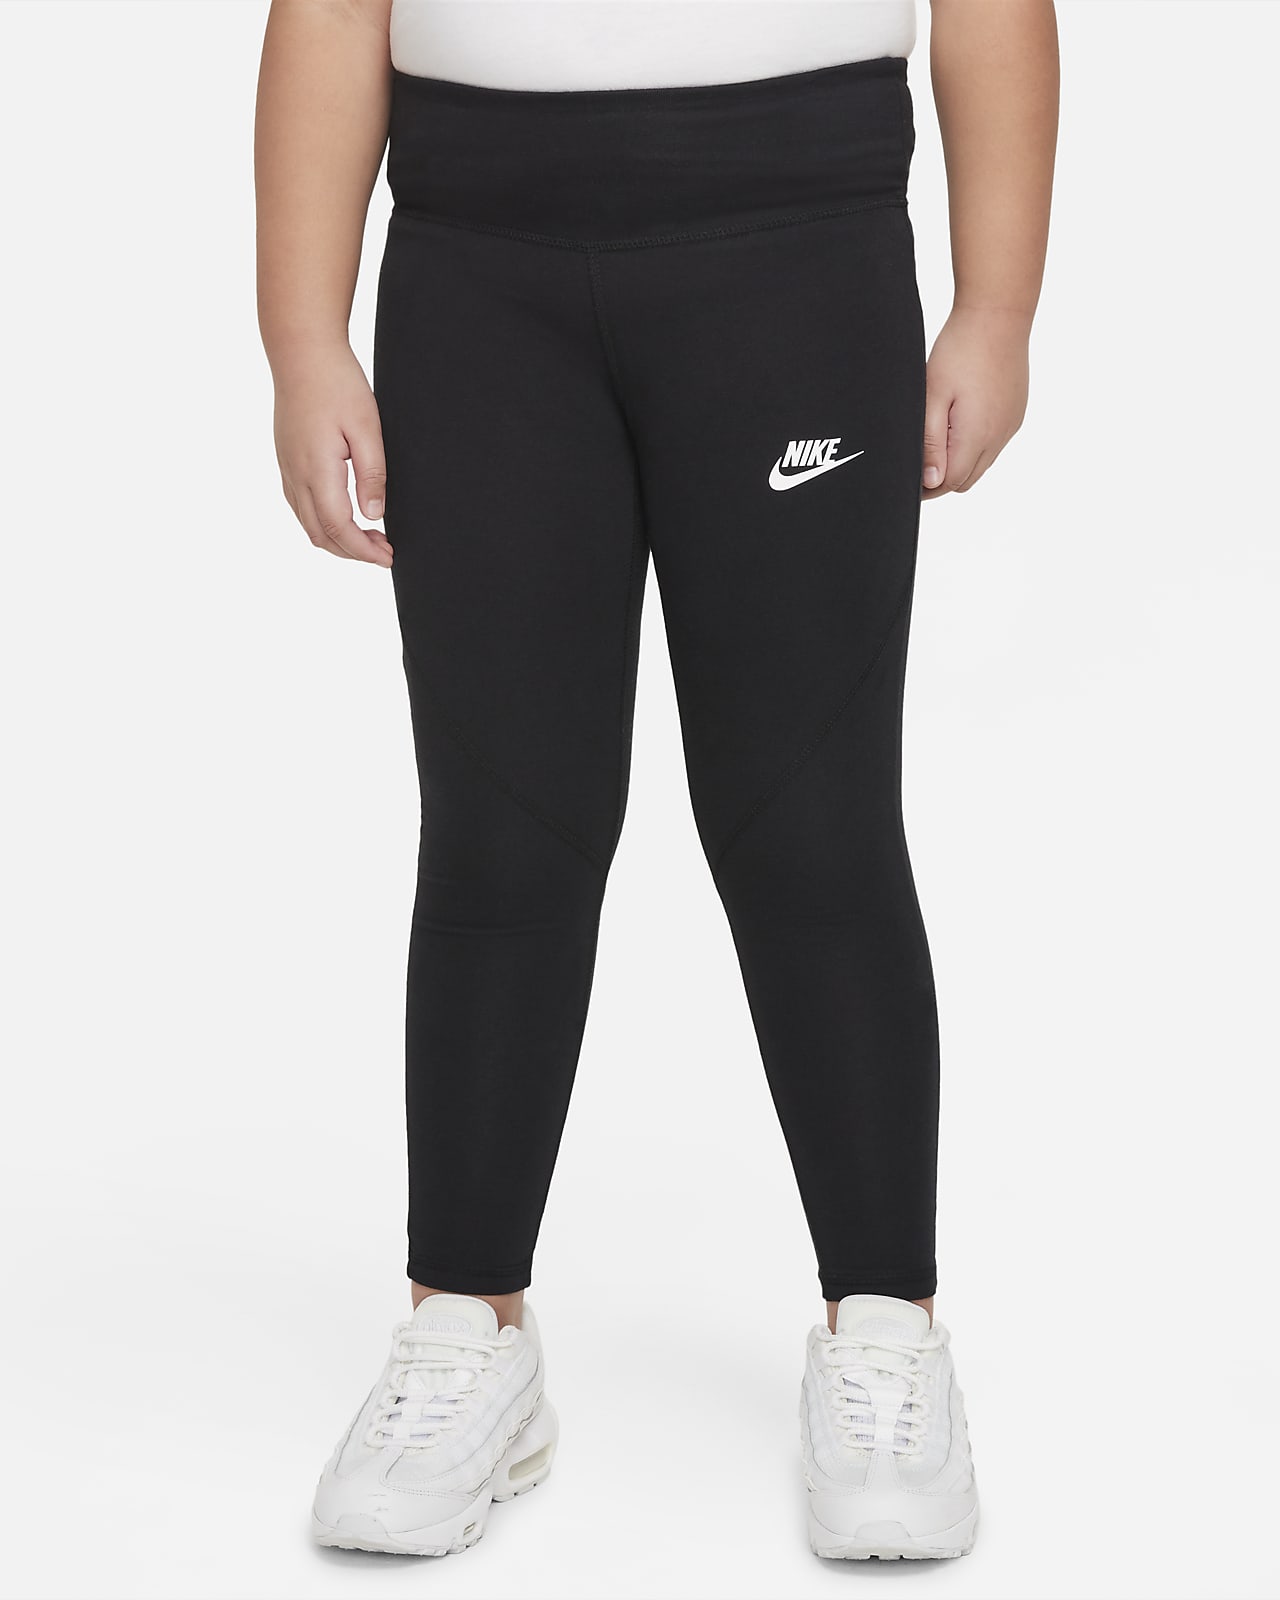 Favorites Leggings mit hohem Taillenbund für ältere ( Mädchen) (große Größe). Nike